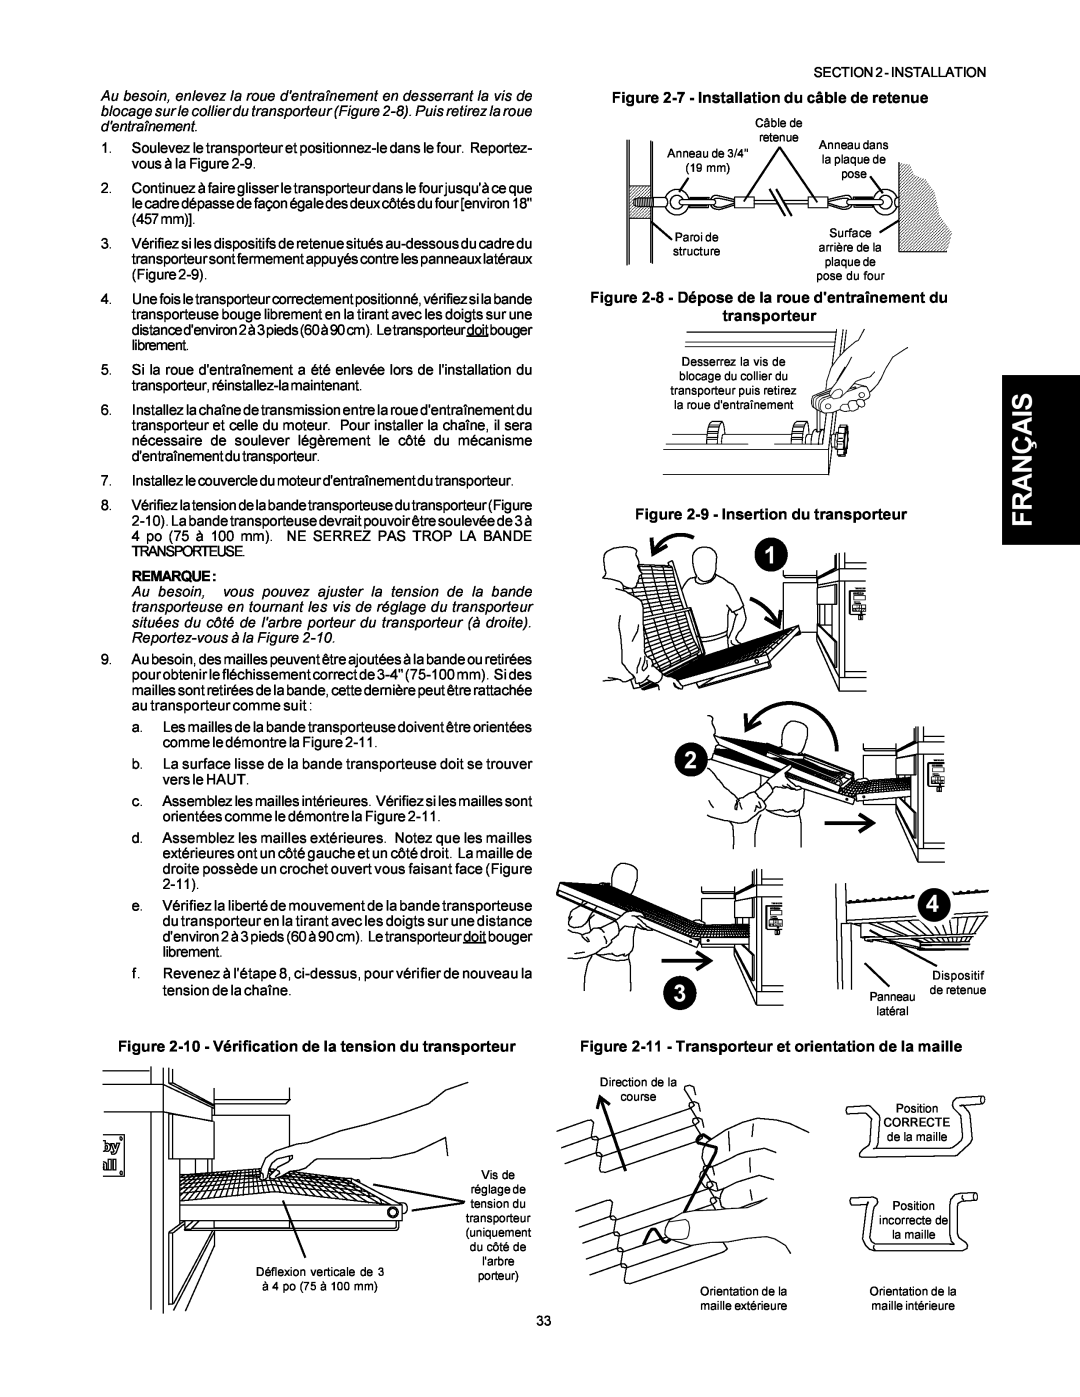 Middleby Marshall PS500 10 - Vérification de la tension du transporteur, 7 - Installation du câble de retenue, Remarque 